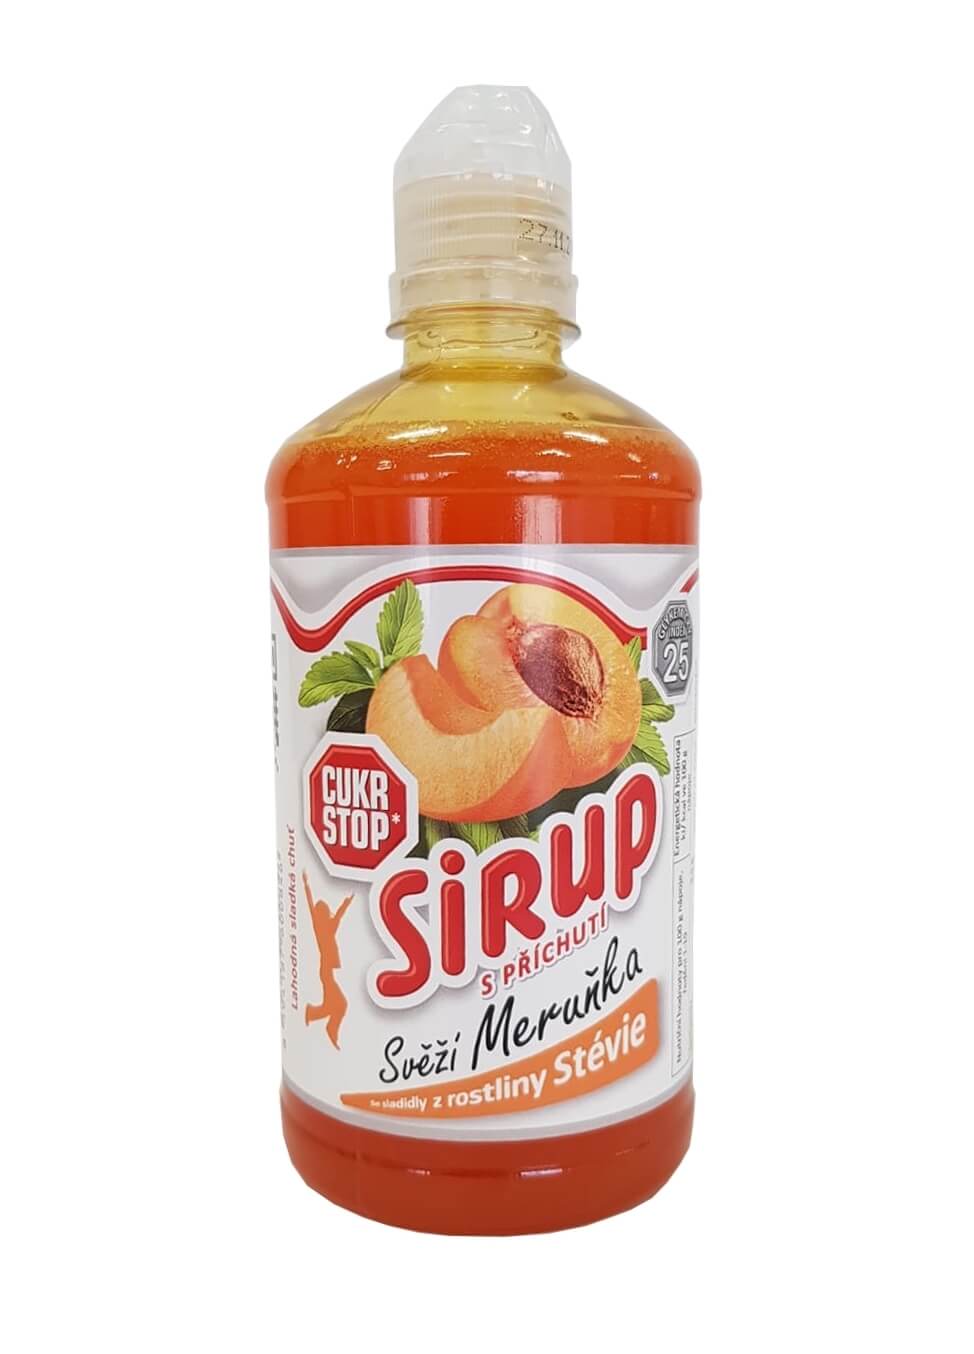 CukrStop Sirup se sladidly z rostliny stévie - svěží meruňka 650 g